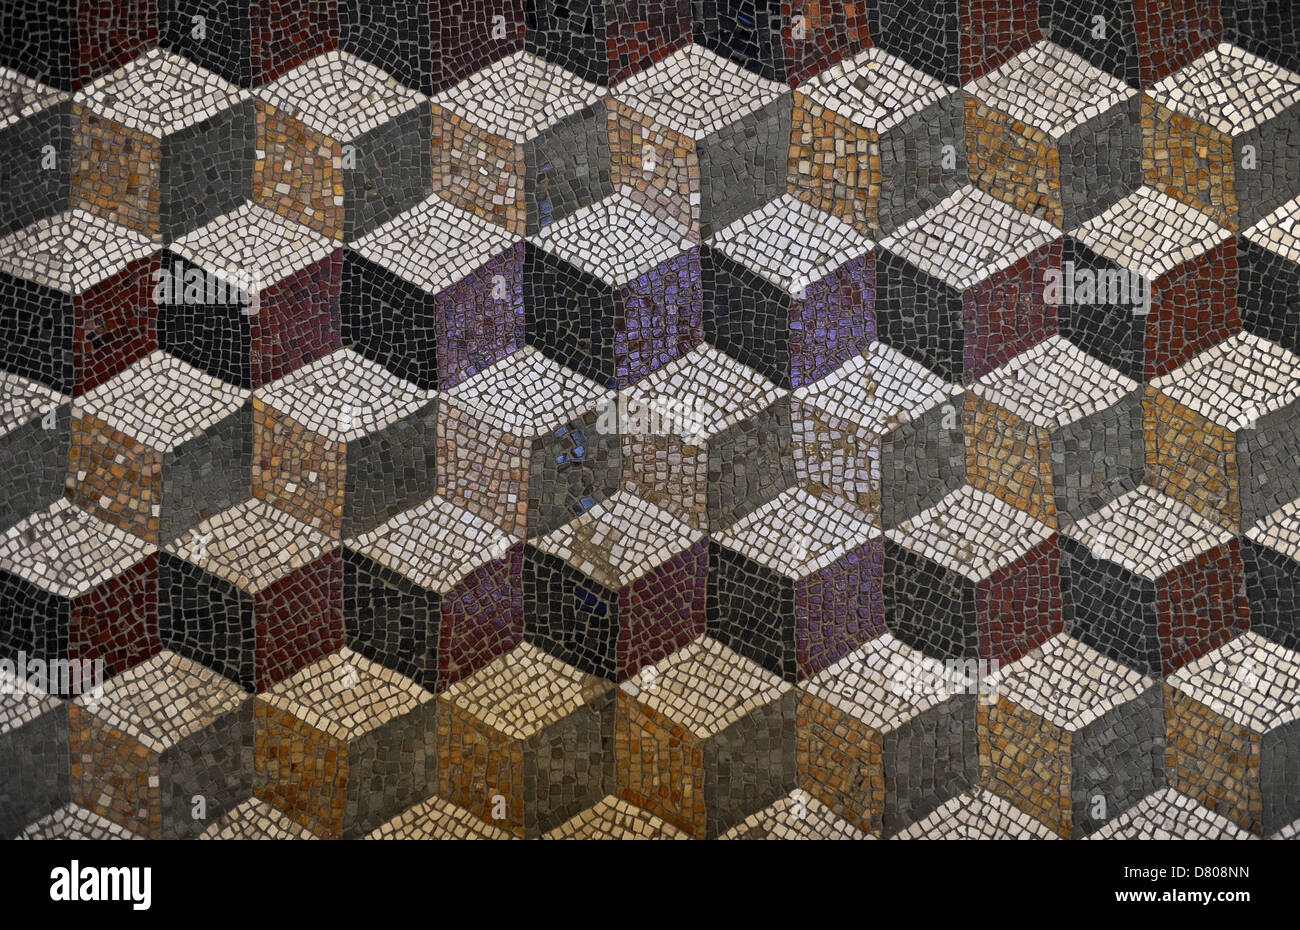 Mosaico romano con un patrón de cubo dándole un efecto tridimensional. Glyptothek. Munich. Alemania. Foto de stock